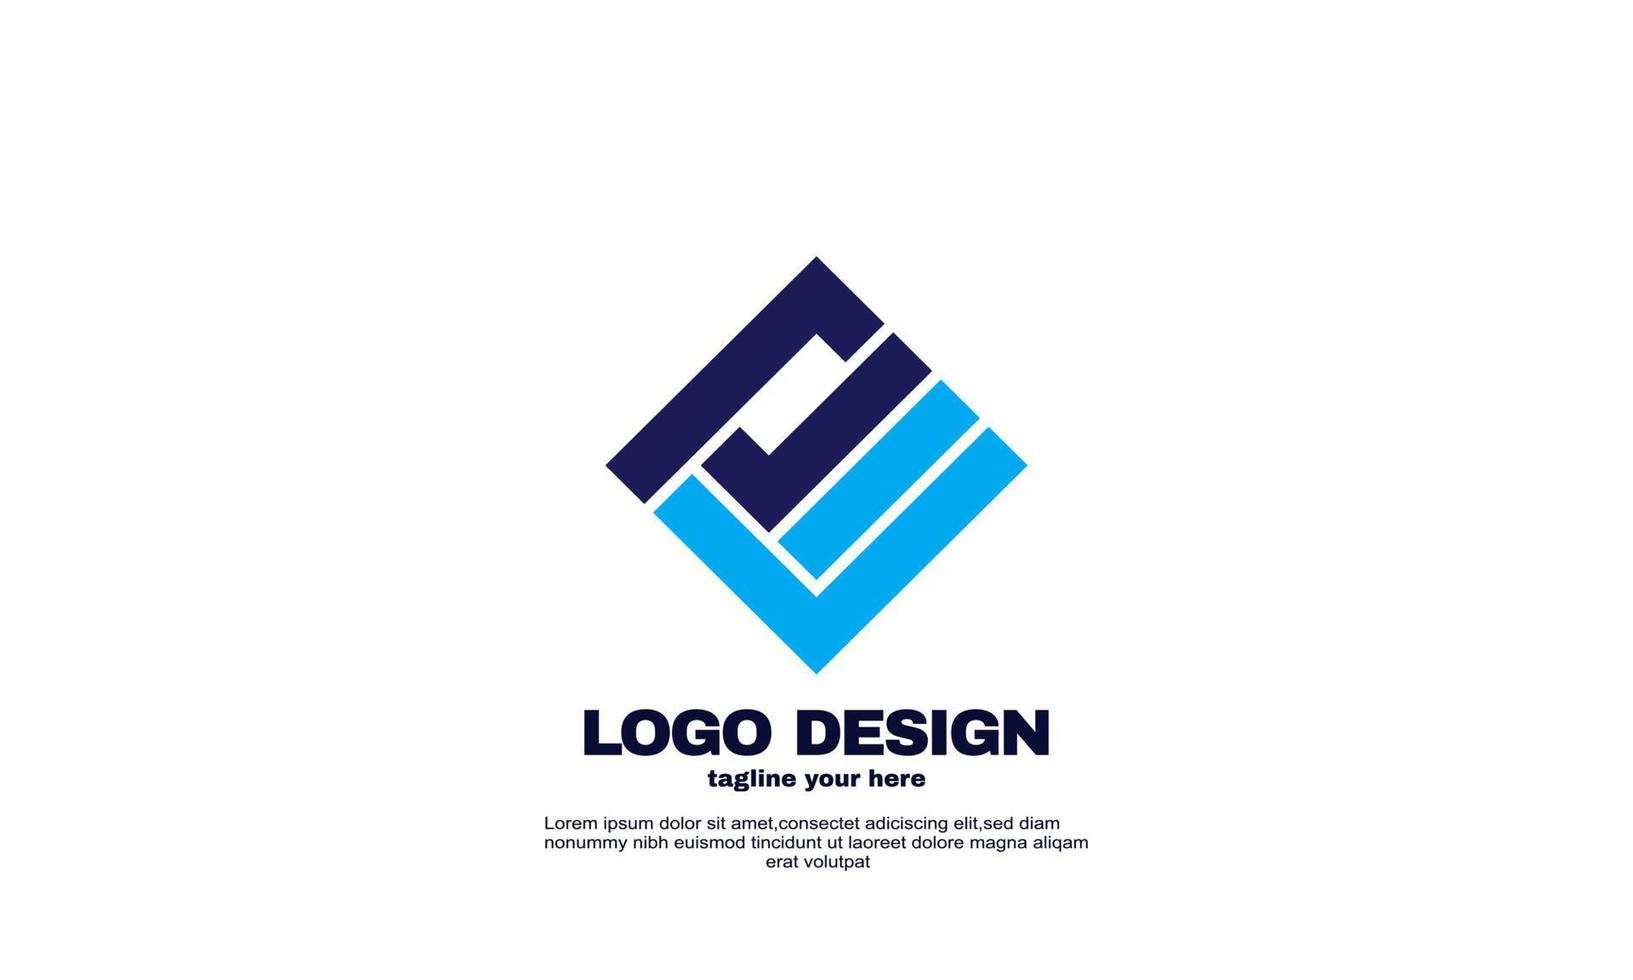 fantastiska designelement ditt varumärke företag företag unik logotyp design vektor